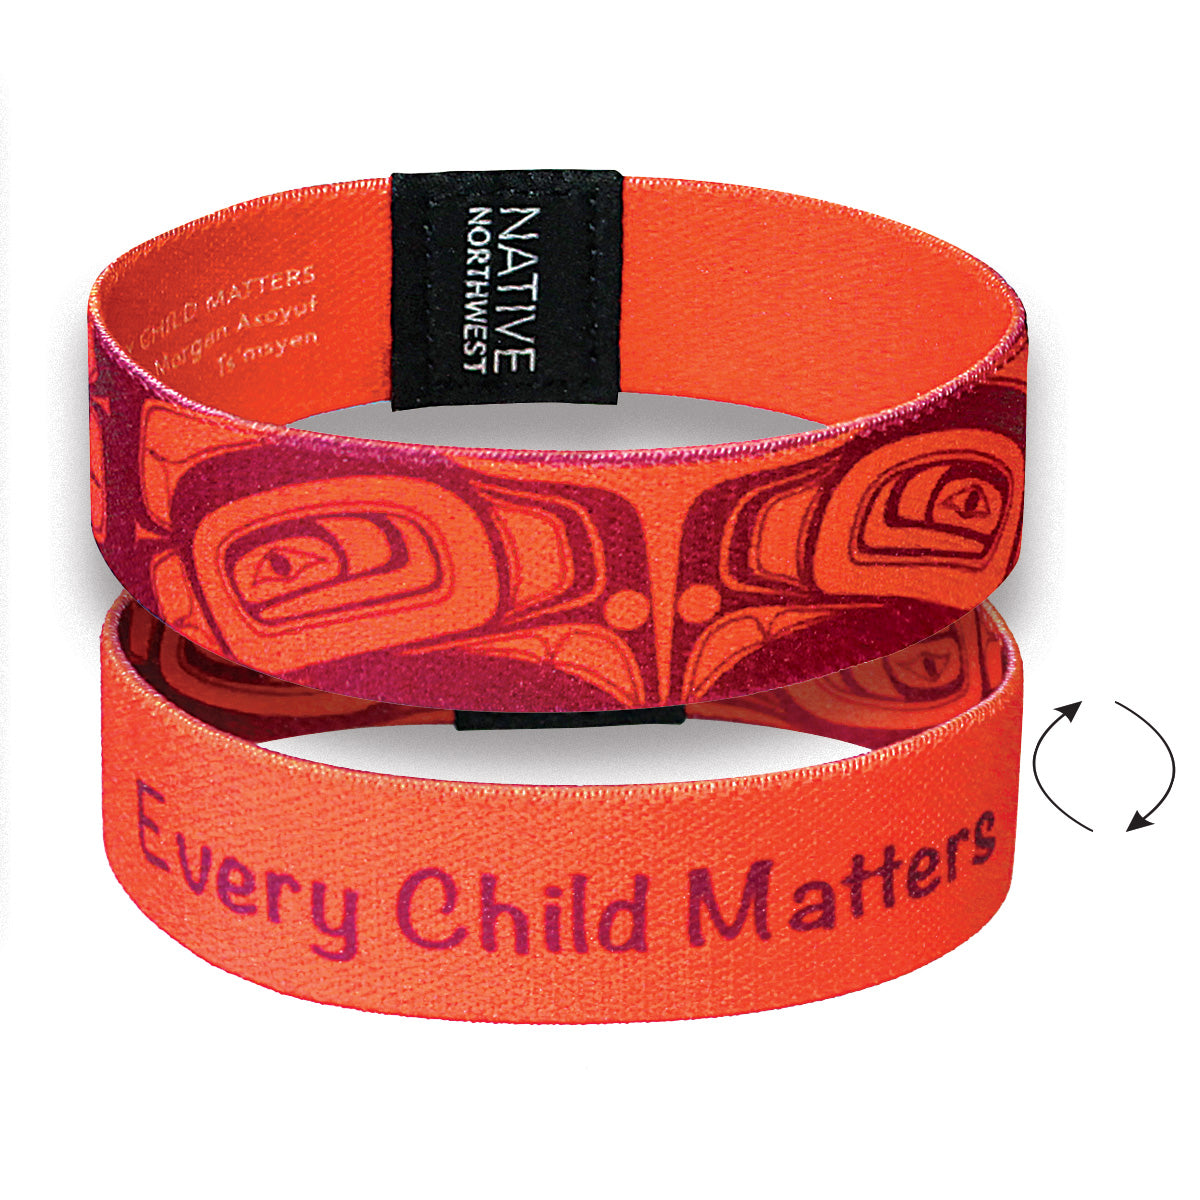 Wristband  EV Child Matters M - Wristband  EV Child Matters M -  - House of Himwitsa Native Art Gallery and Gifts